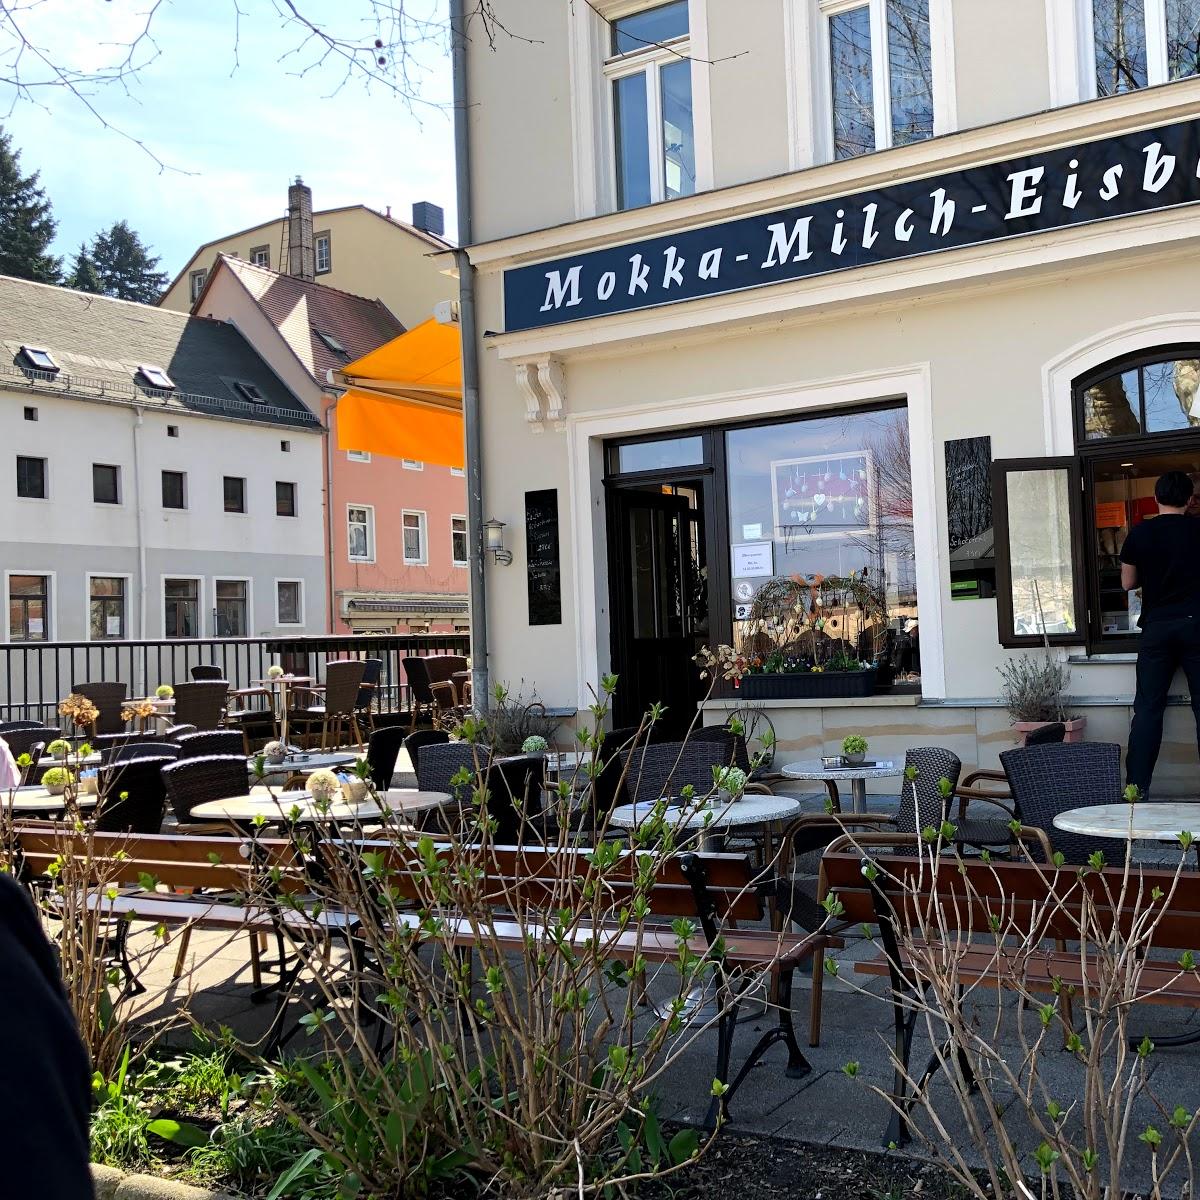 Restaurant "Mokka Milch Eisbar" in Königstein